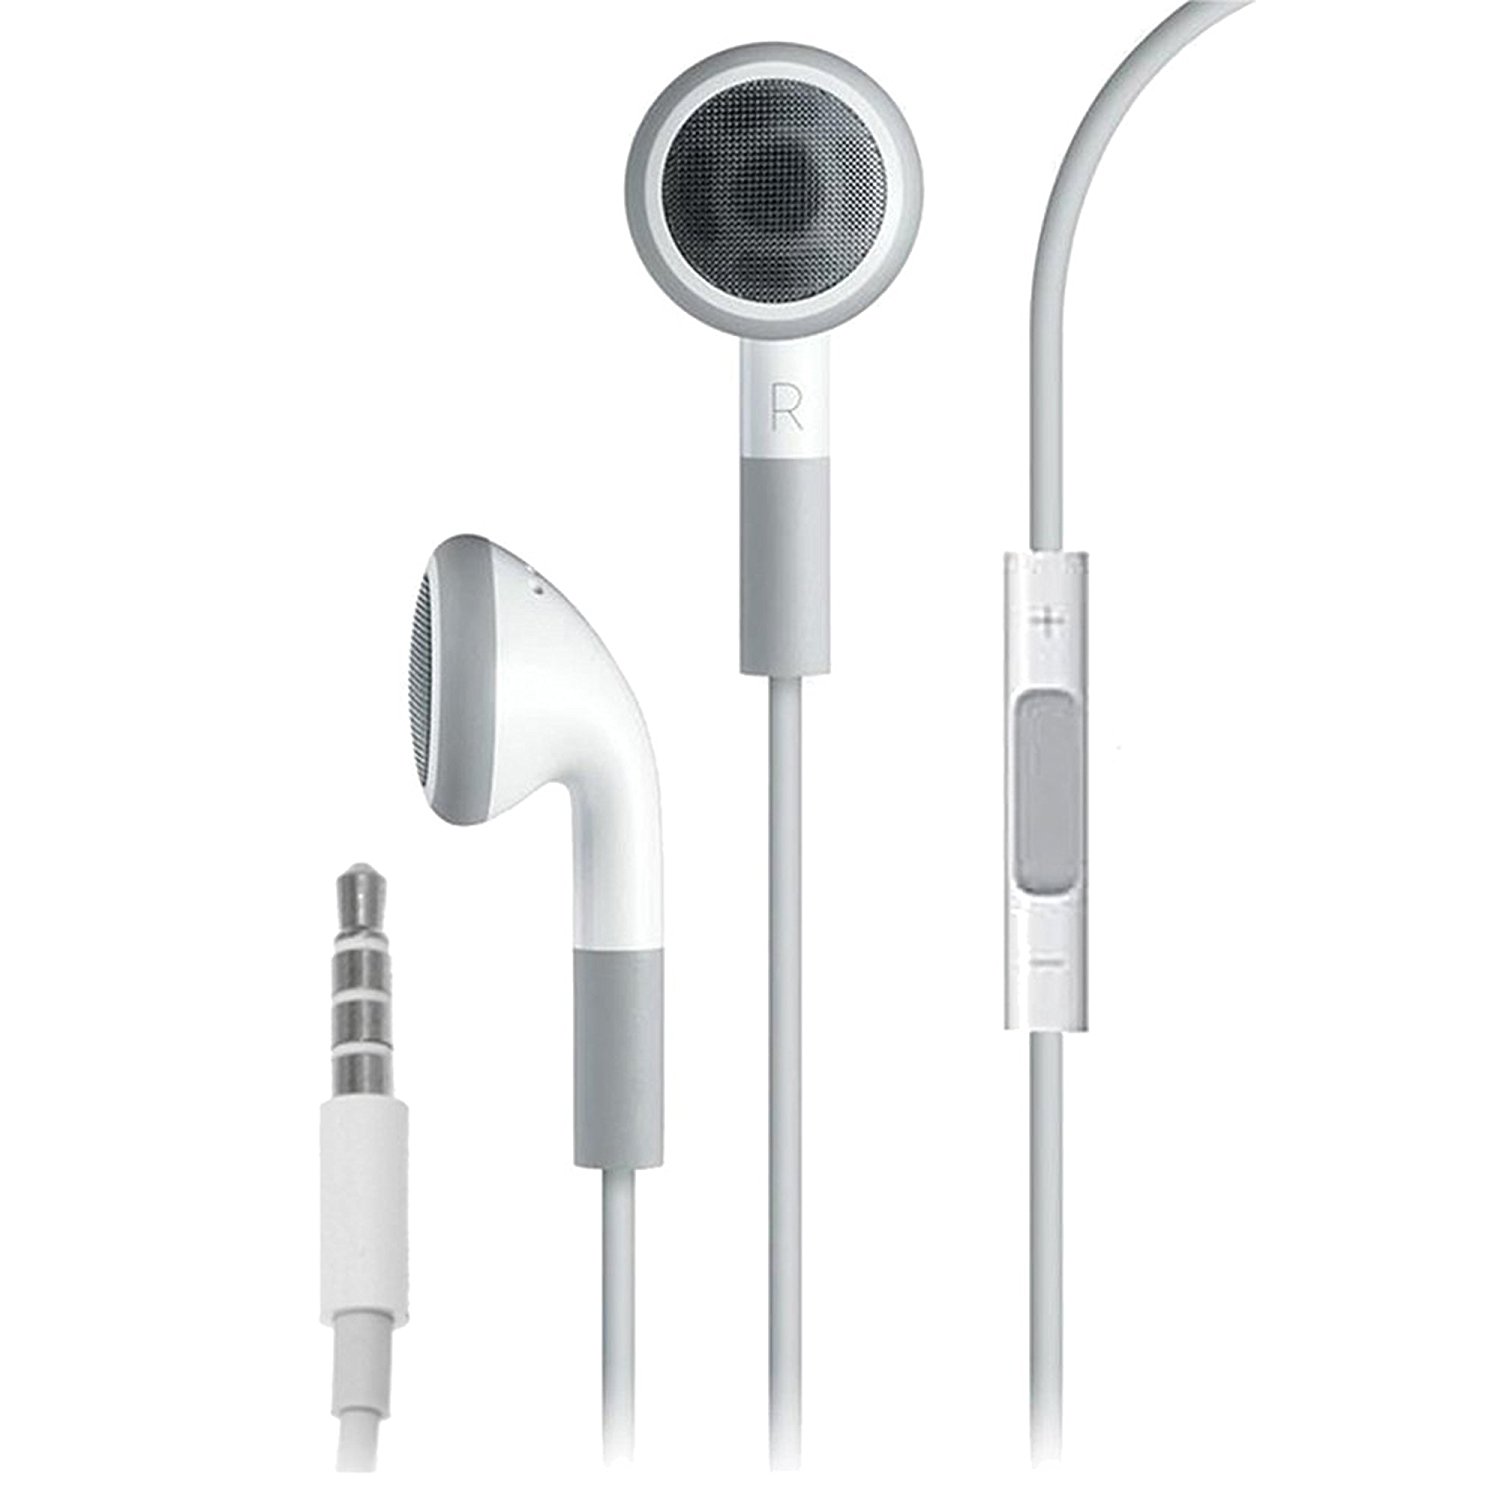 Apple Earphones for iPhone 3GS/4/4S: Amazon.co.uk: Electronics